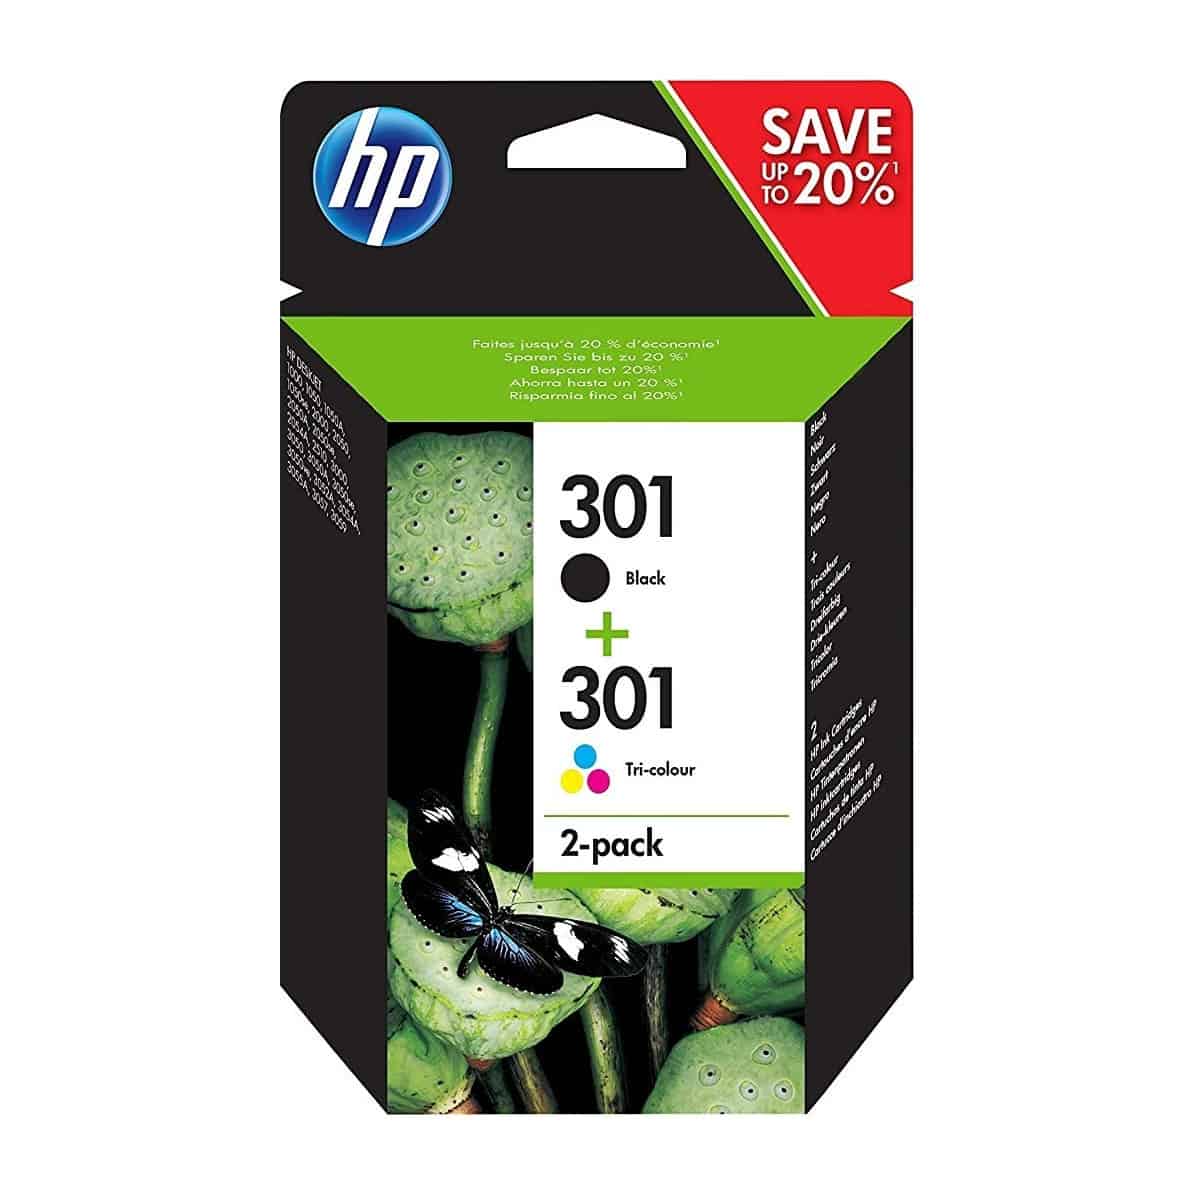 HP 305 + papier photo - Noir, couleurs - Origine